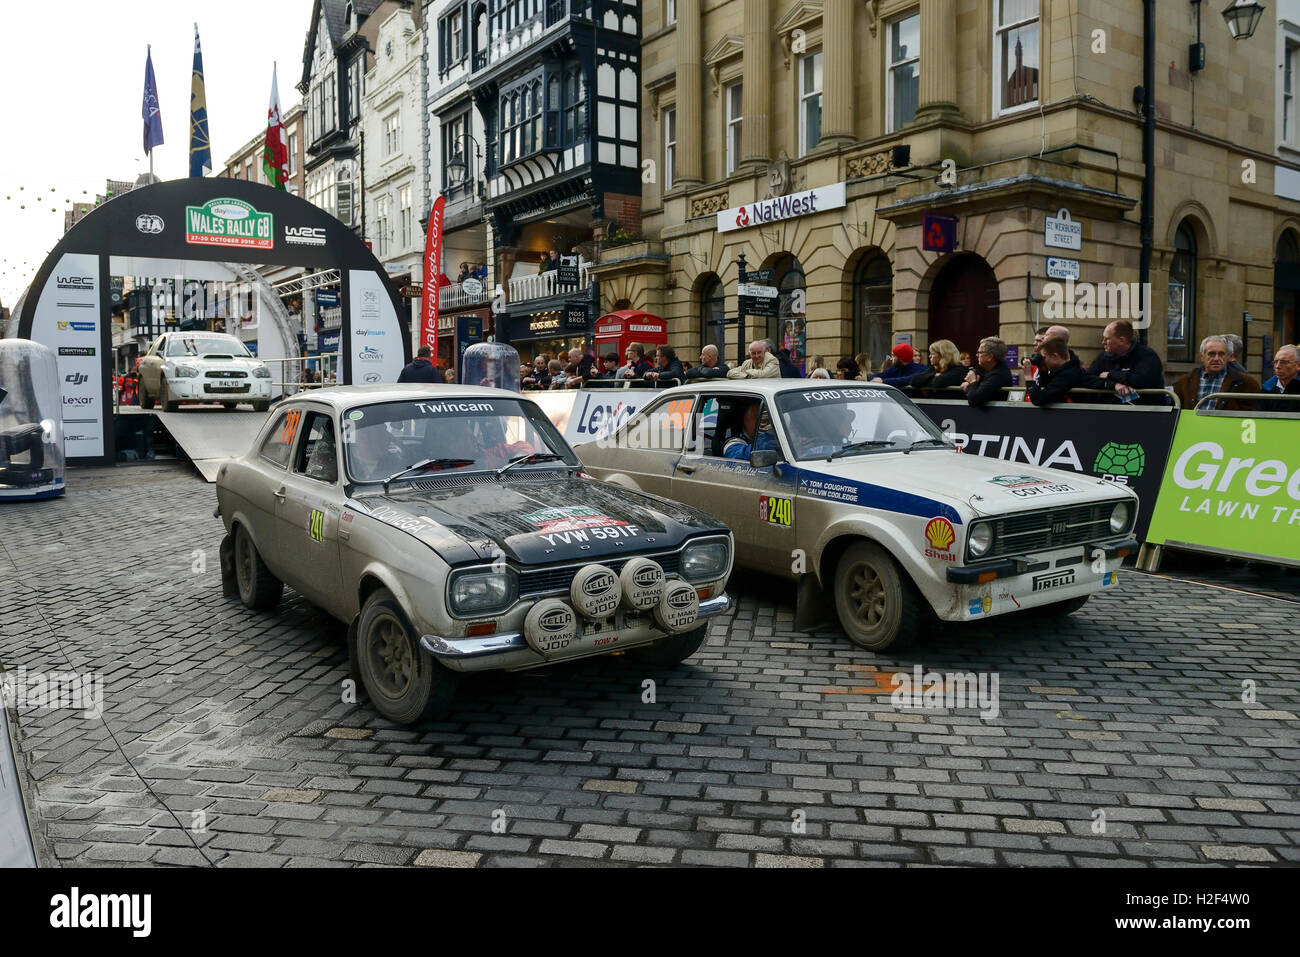 Chester, Royaume-Uni. 28 octobre, 2016. Wales Rally GB. À la fin de la première journée, Ford Escort voitures concurrentes dans l'WRGB Rallye National route à travers le centre-ville de Chester. Crédit : Andrew Paterson/Alamy Live News Banque D'Images